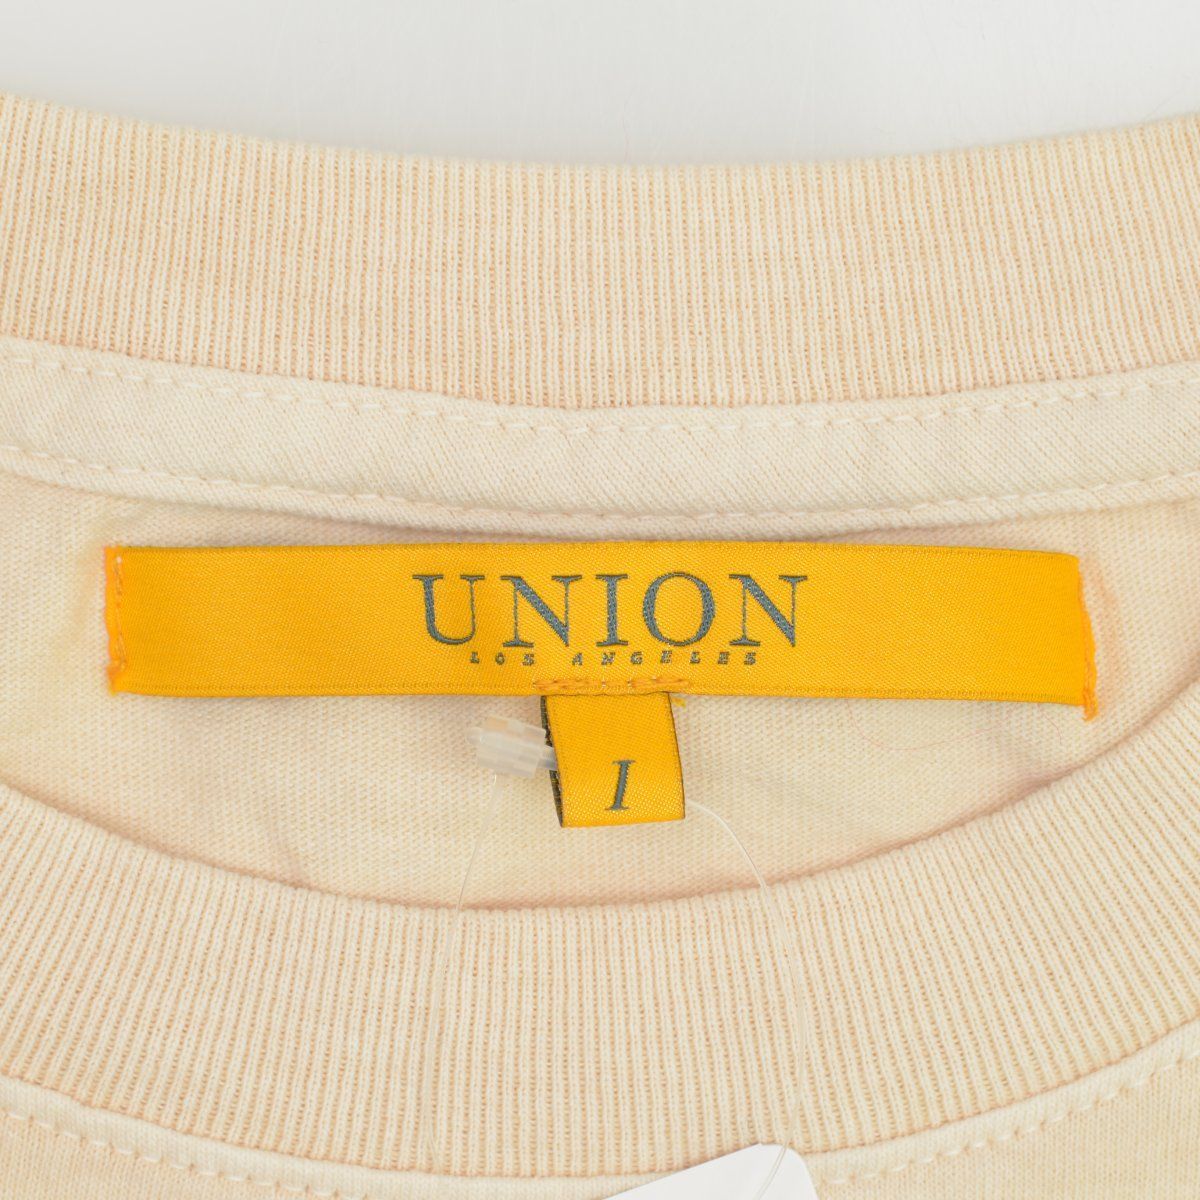 UNION】UNION DELORES TEE半袖Tシャツ - ブランド古着のカンフル